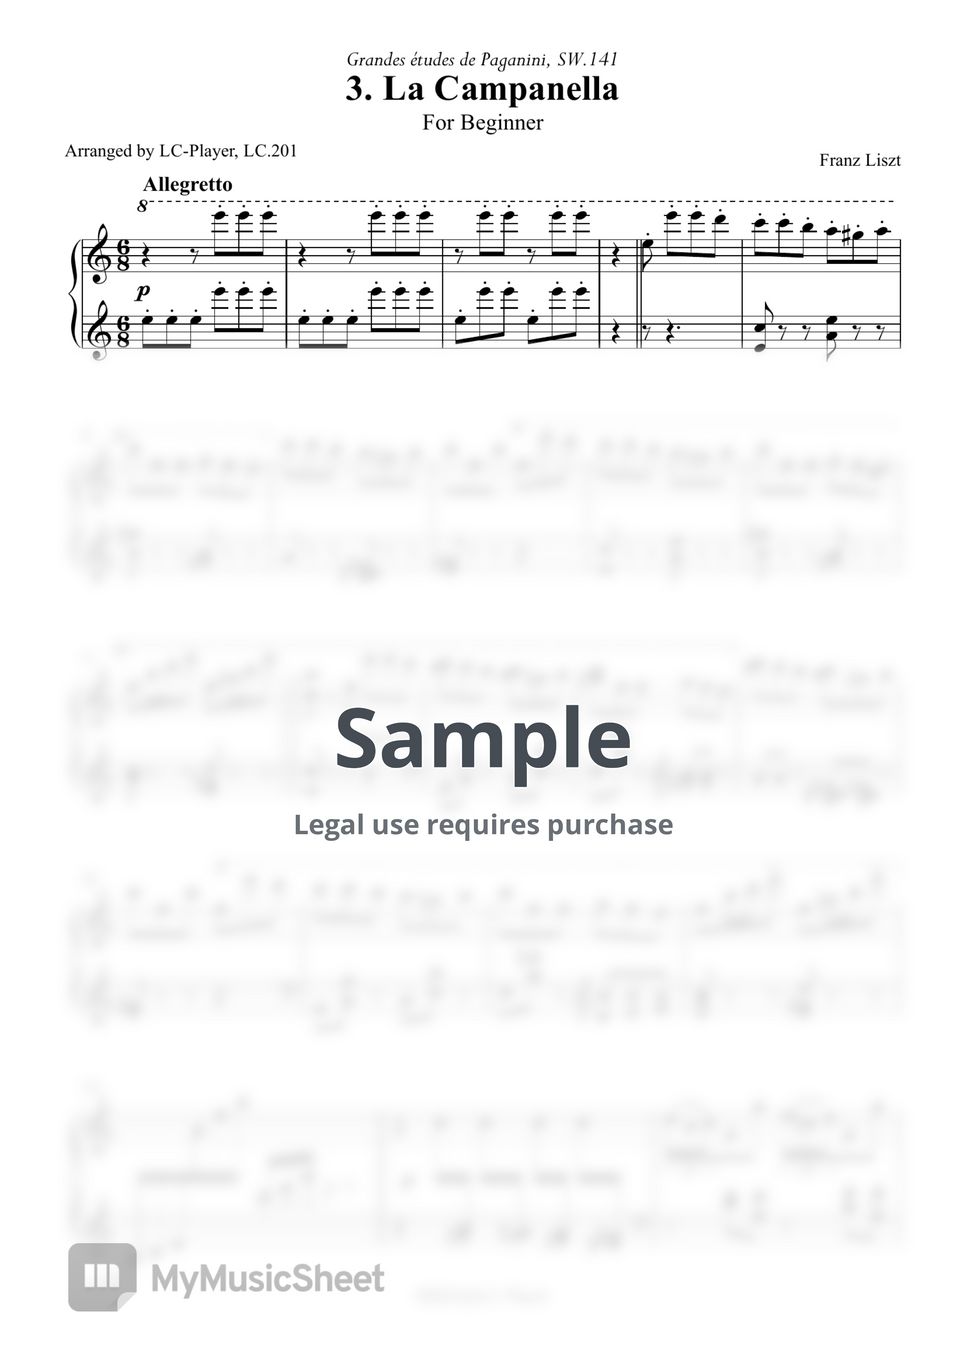 Franz Liszt - Grand Etudes de Paganini S.141 No.3 La Campanella (La Campanella For Beginner) by LC-Player